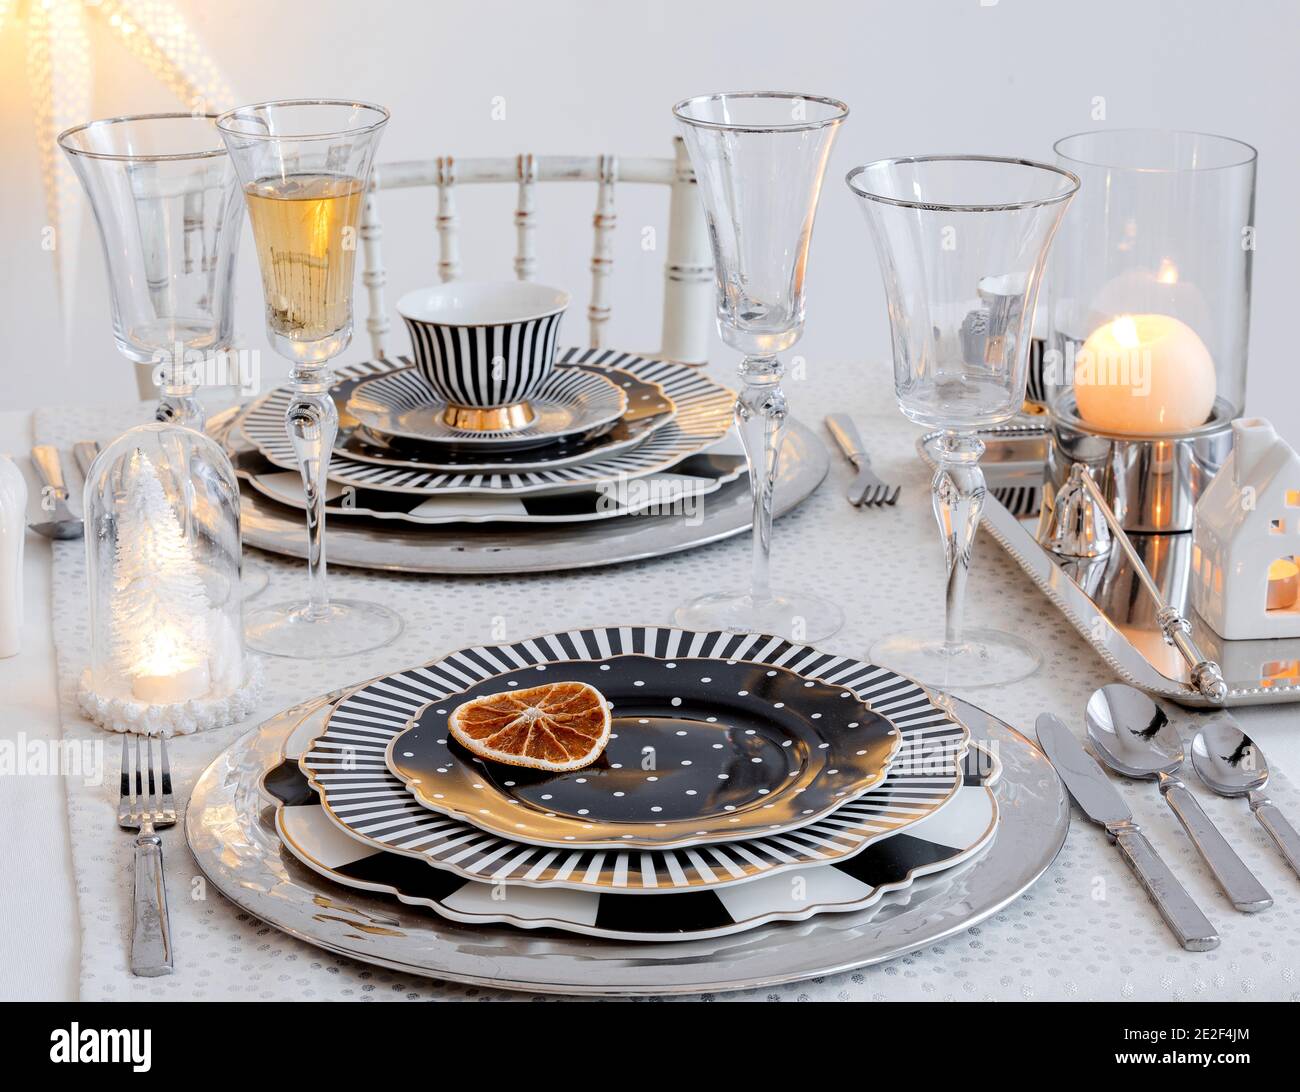 Elegante tavolo con set di piatti bianchi e neri, bicchieri da